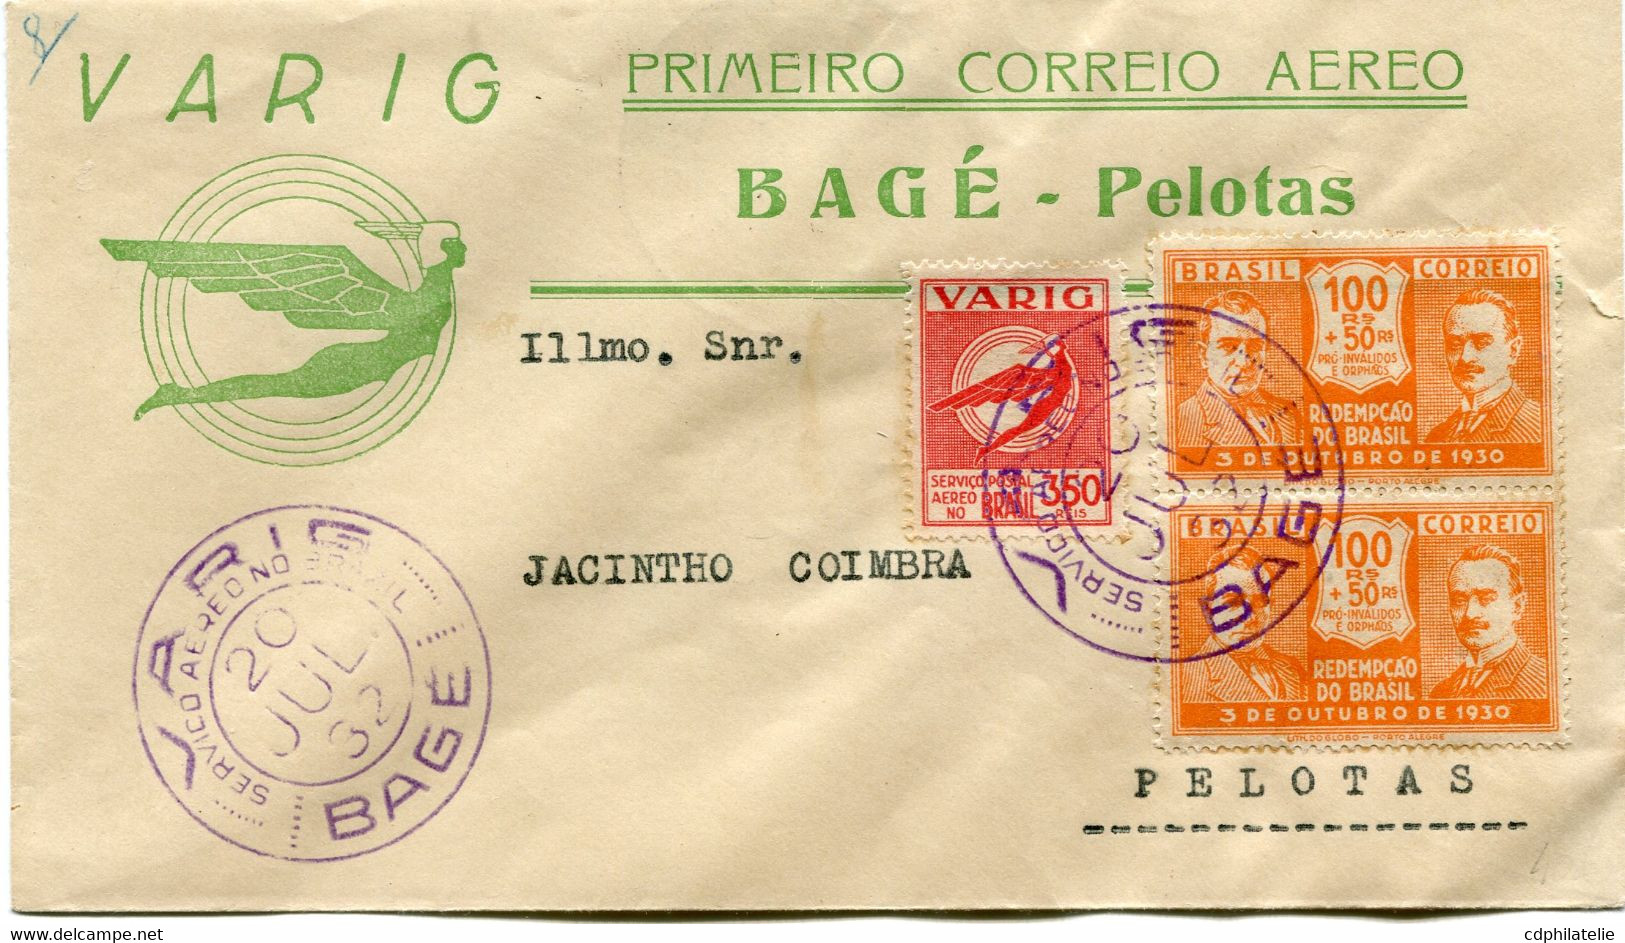 BRAZIL, 1932, AEROPOSTALE, COVER